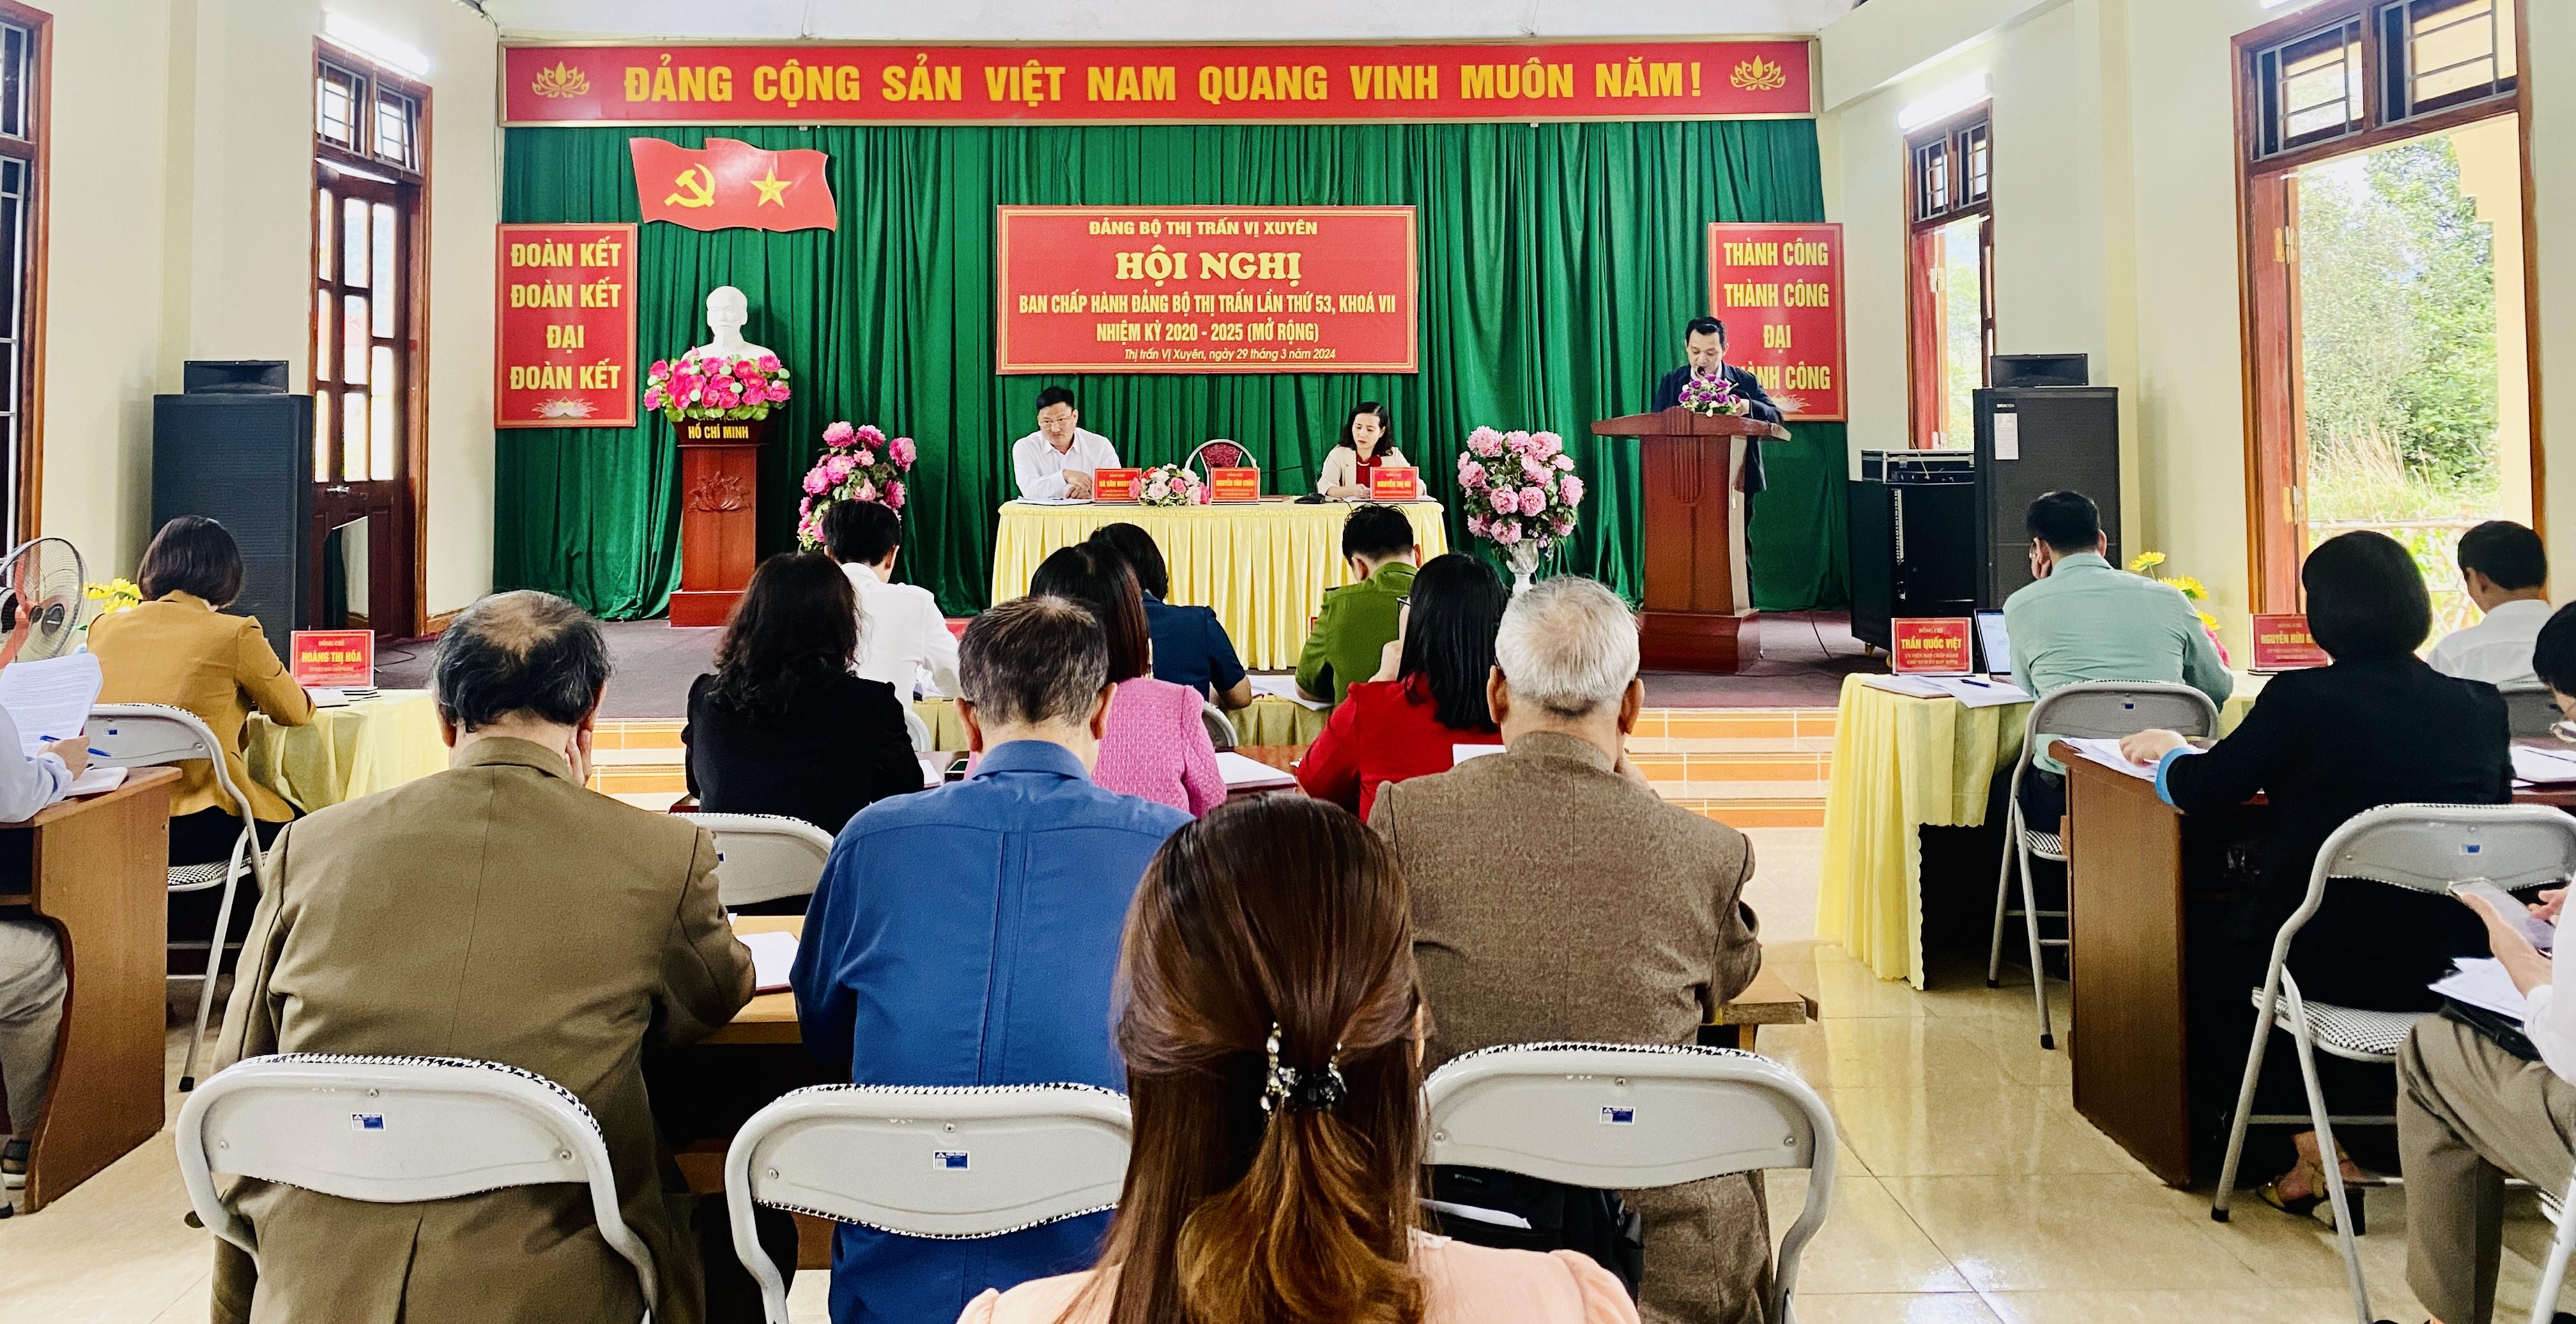 Hội nghị BCH Đảng bộ thị trấn Vị Xuyên lần thứ 53, Khoá VII, nhiệm kỳ 2020-2025